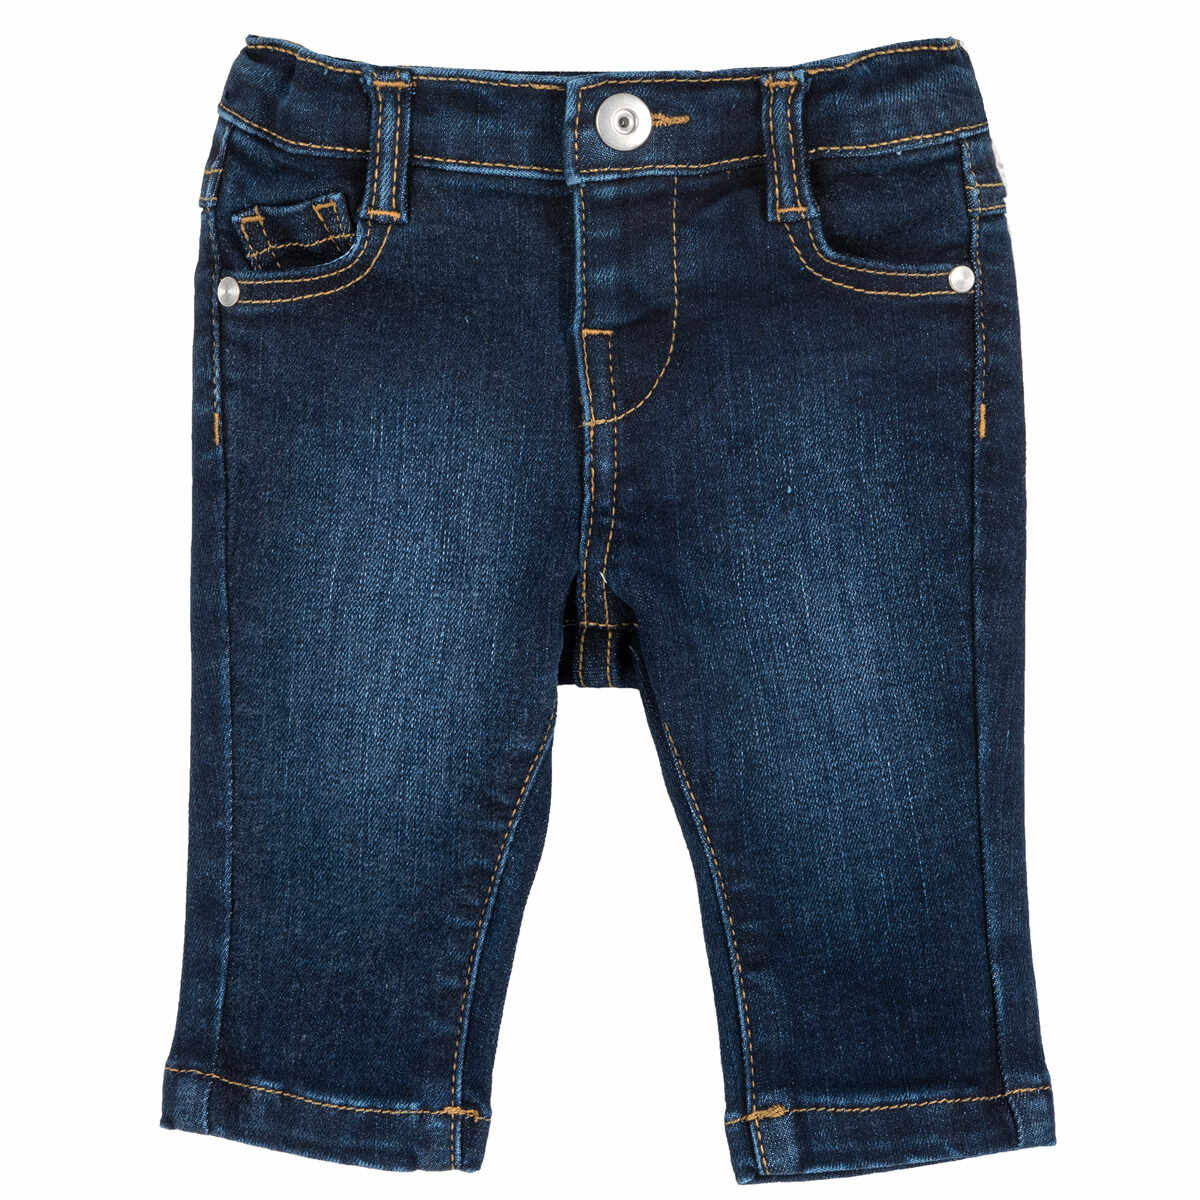 Pantalon lung copii Chicco, denim elastic, albastru, 08287